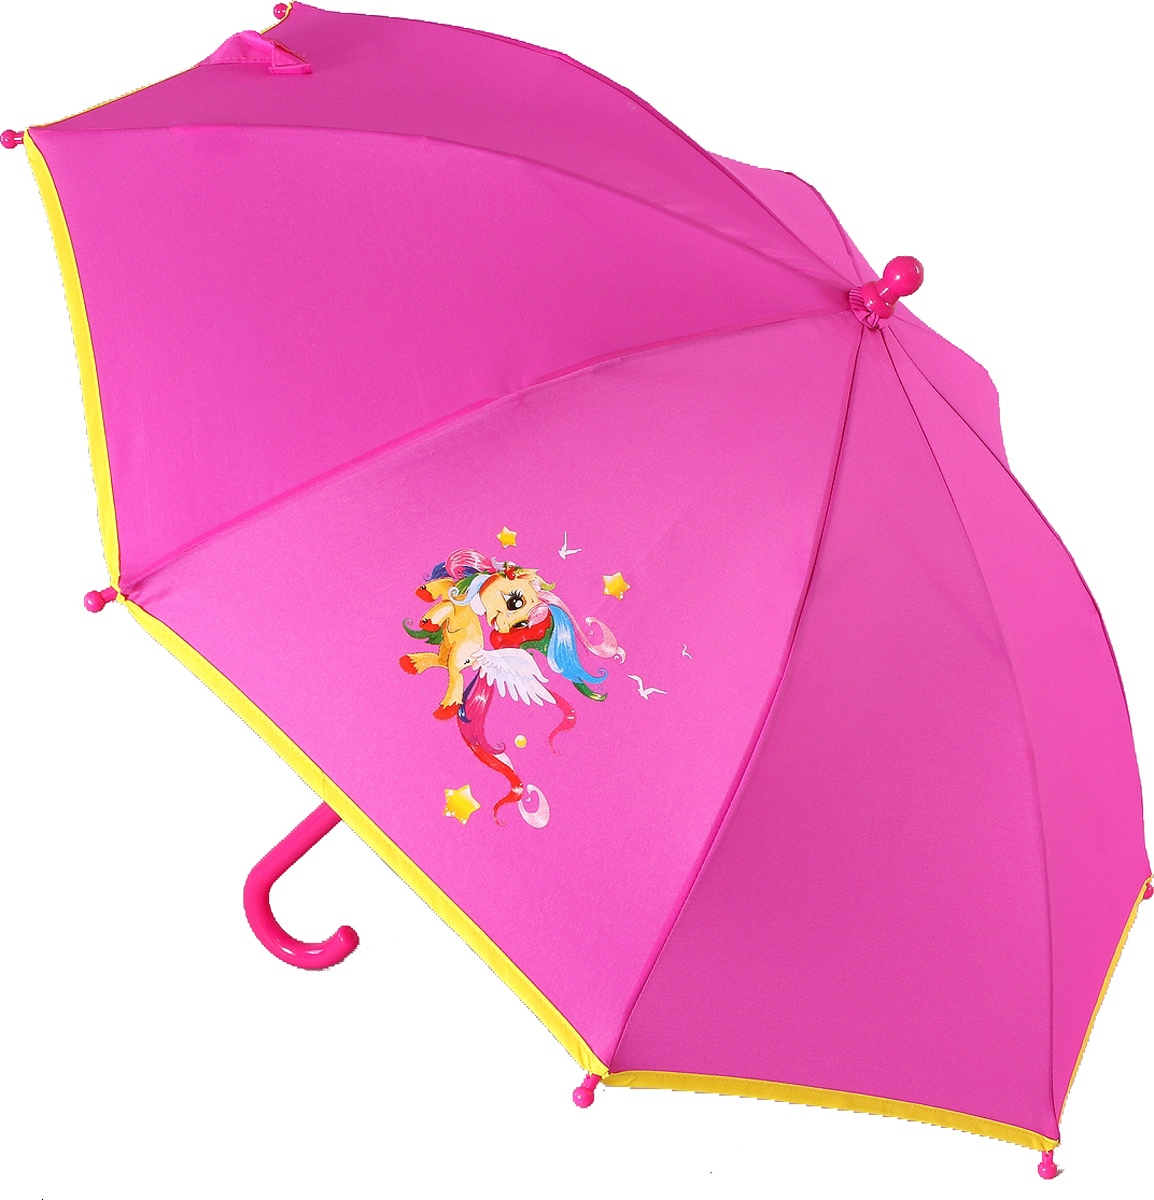 Зонт-трость детский ArtRain, автомат, цвет: фуксия, желтый. 1662-01